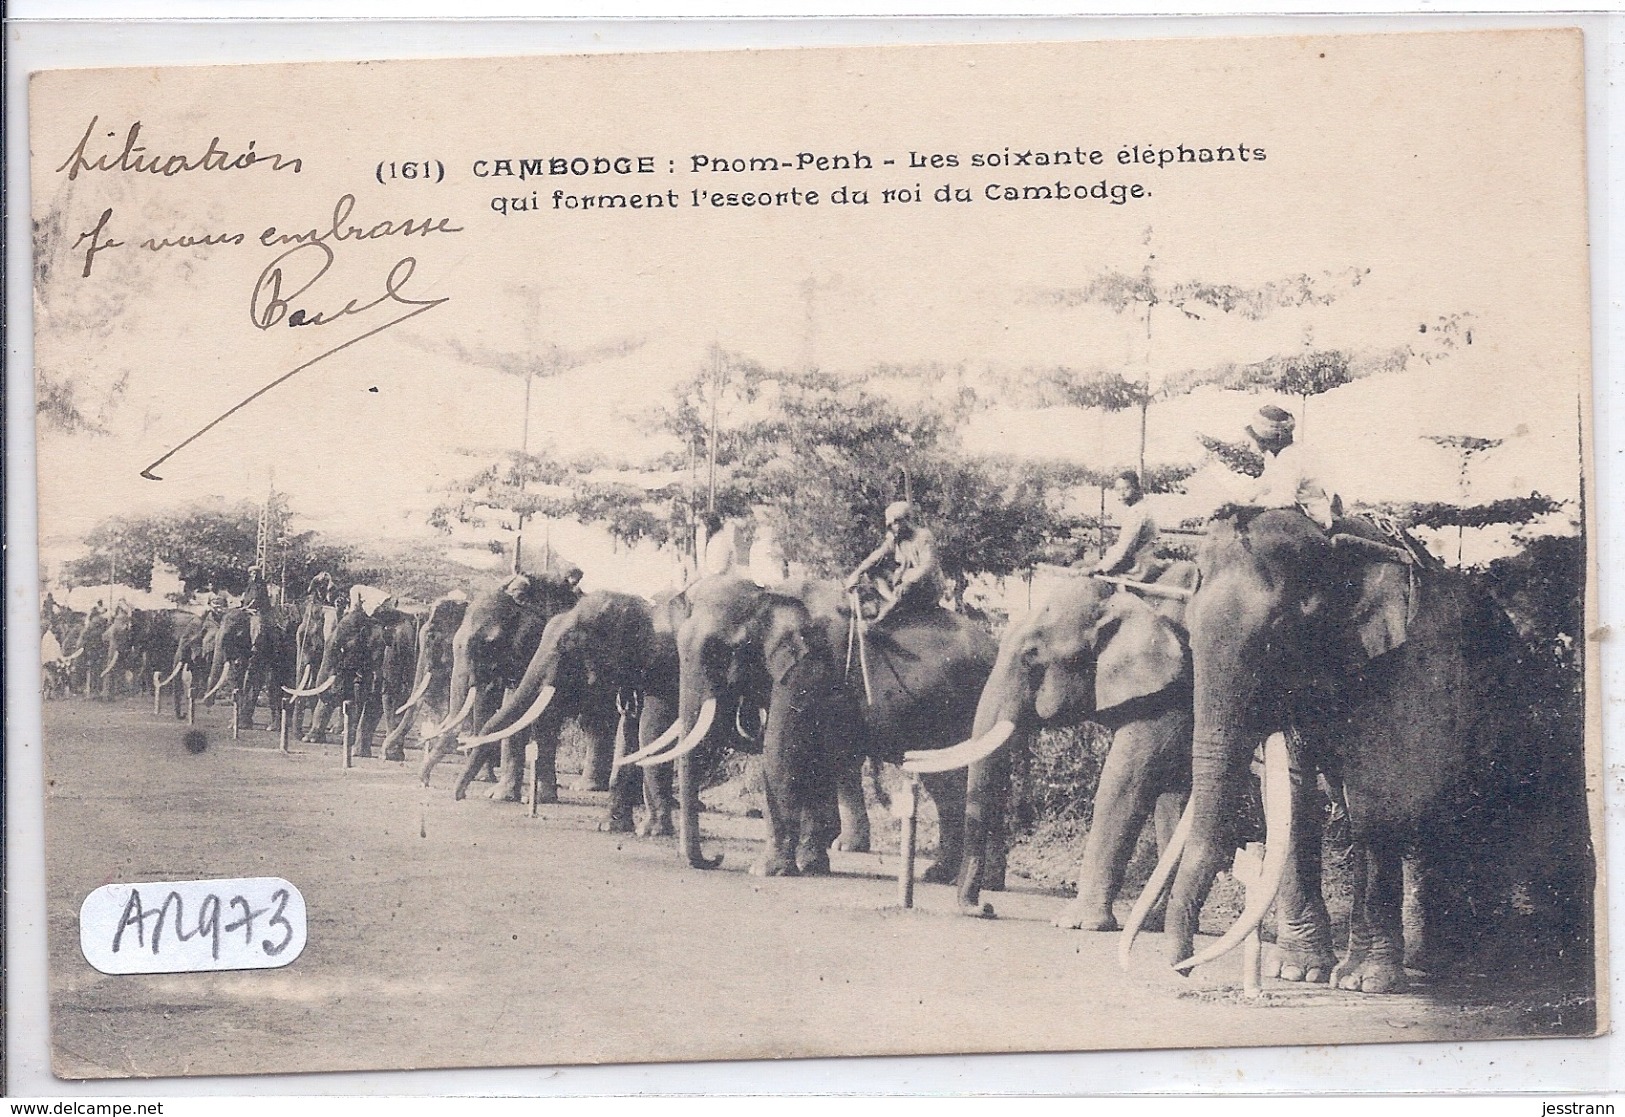 CAMBODGE- PNOM-PENH- LES SOIXANTE ELEPHANTS QUI FORMENT L ESCORTE DU ROI DU CAMBODGE - Cambodge